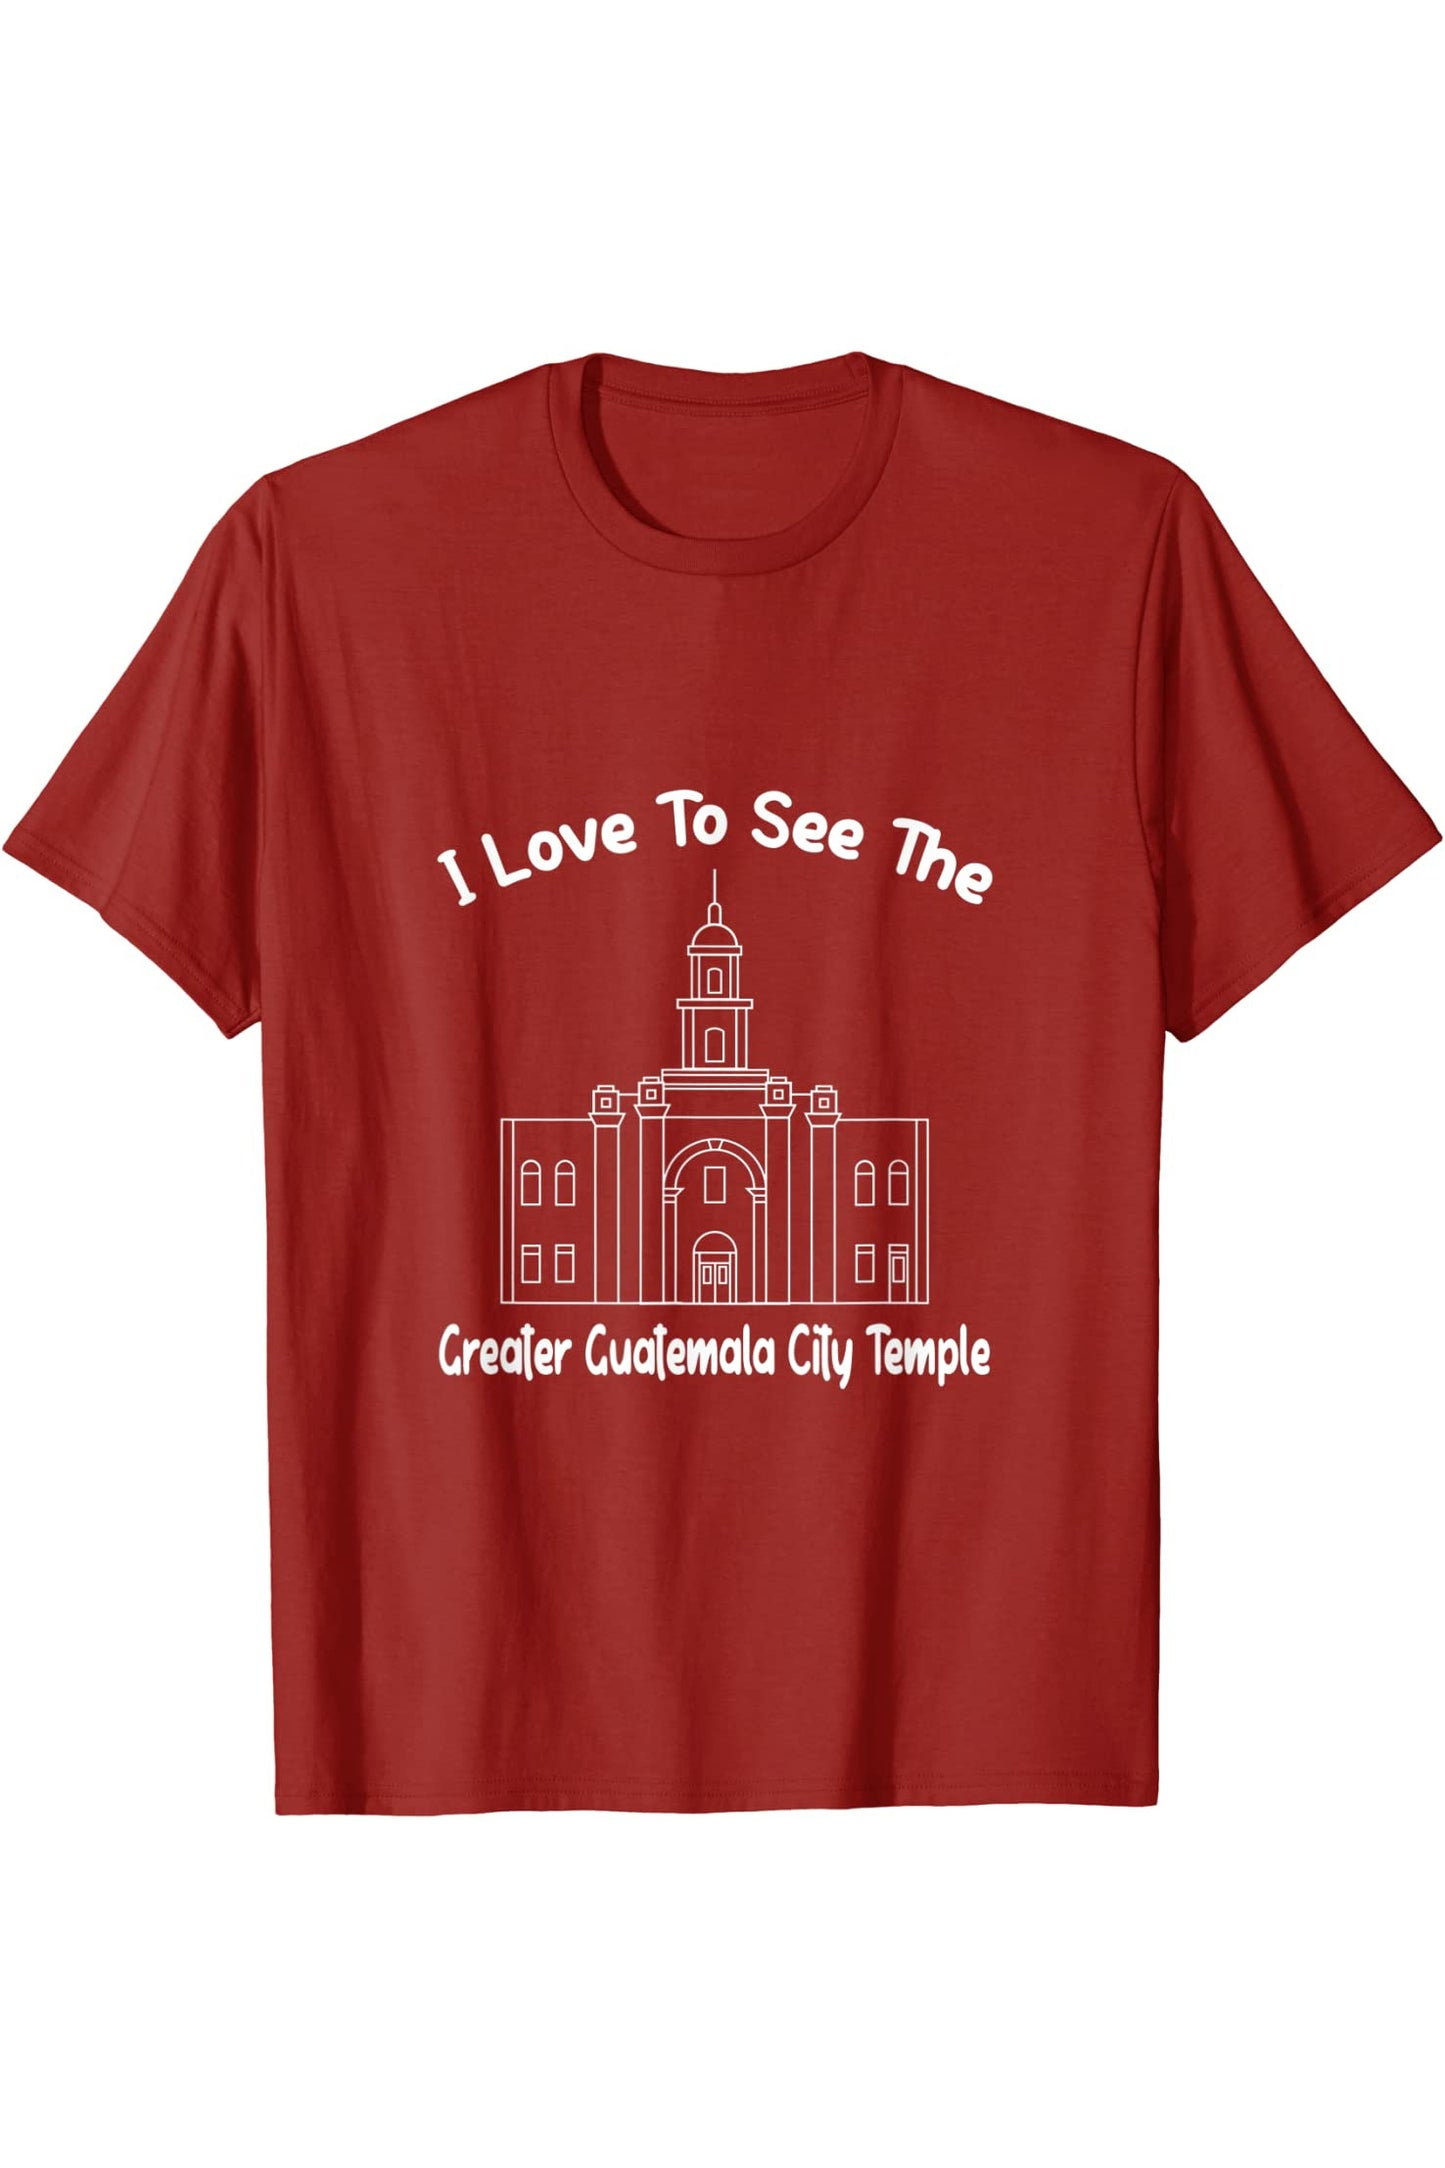 Grande Tempio della Città del Guatemala, amo vedere il mio tempio T-Shirt